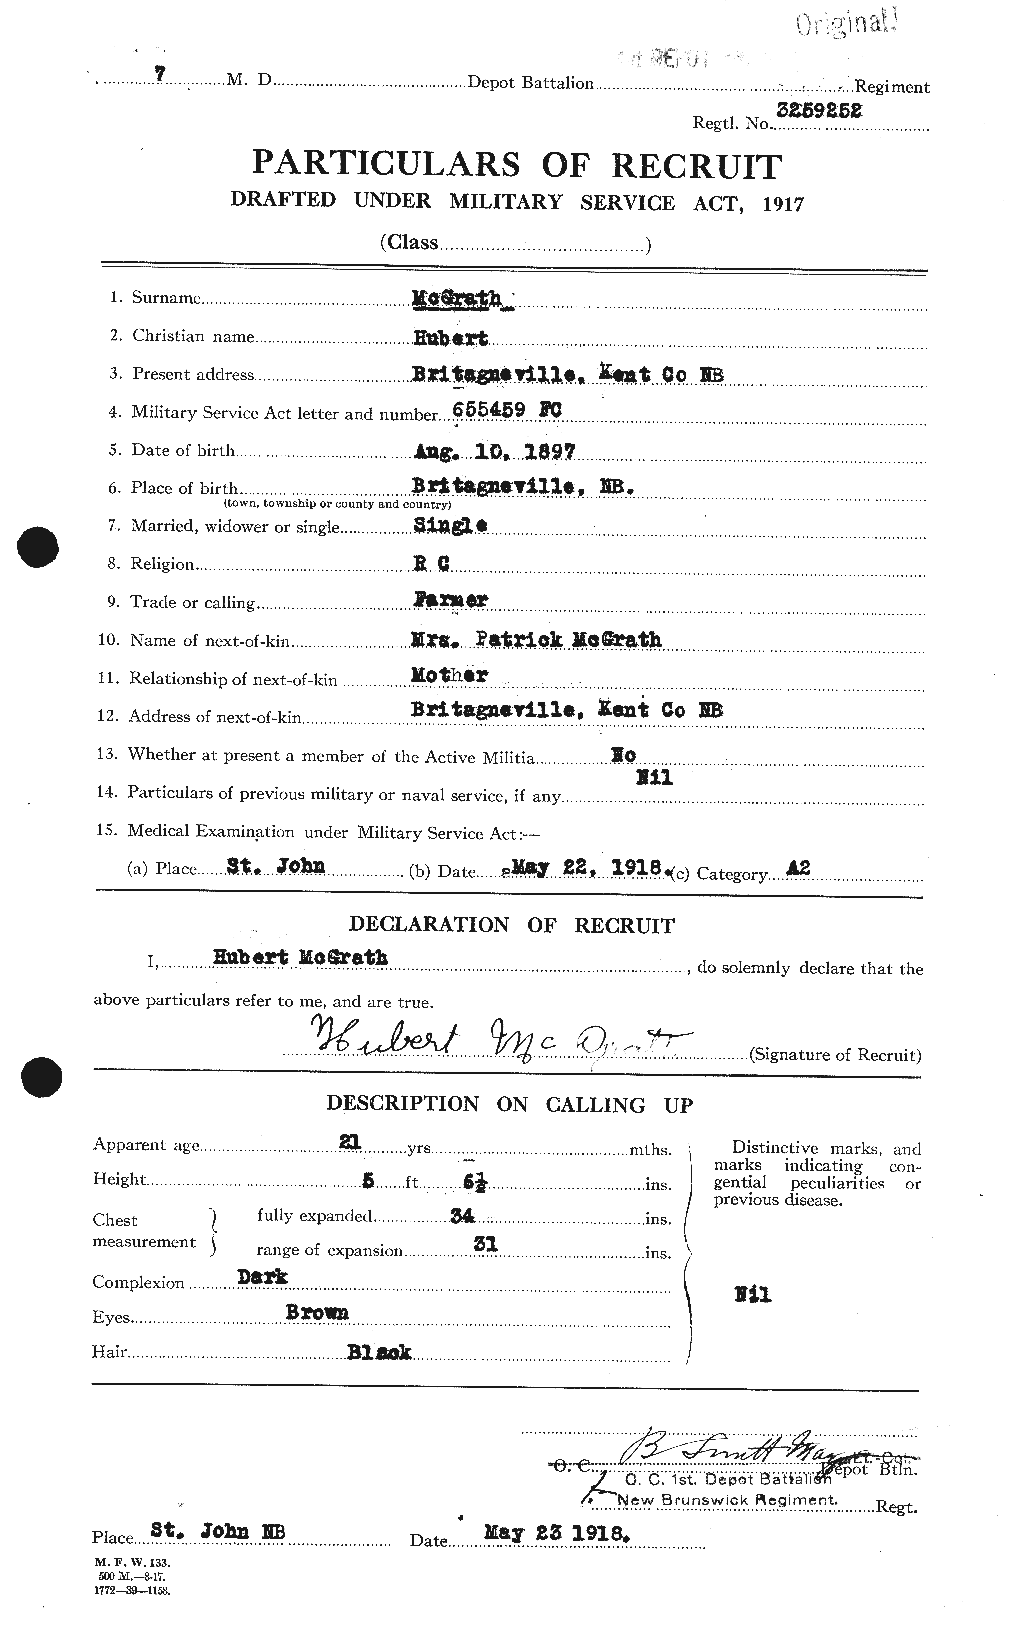 Dossiers du Personnel de la Première Guerre mondiale - CEC 523575a